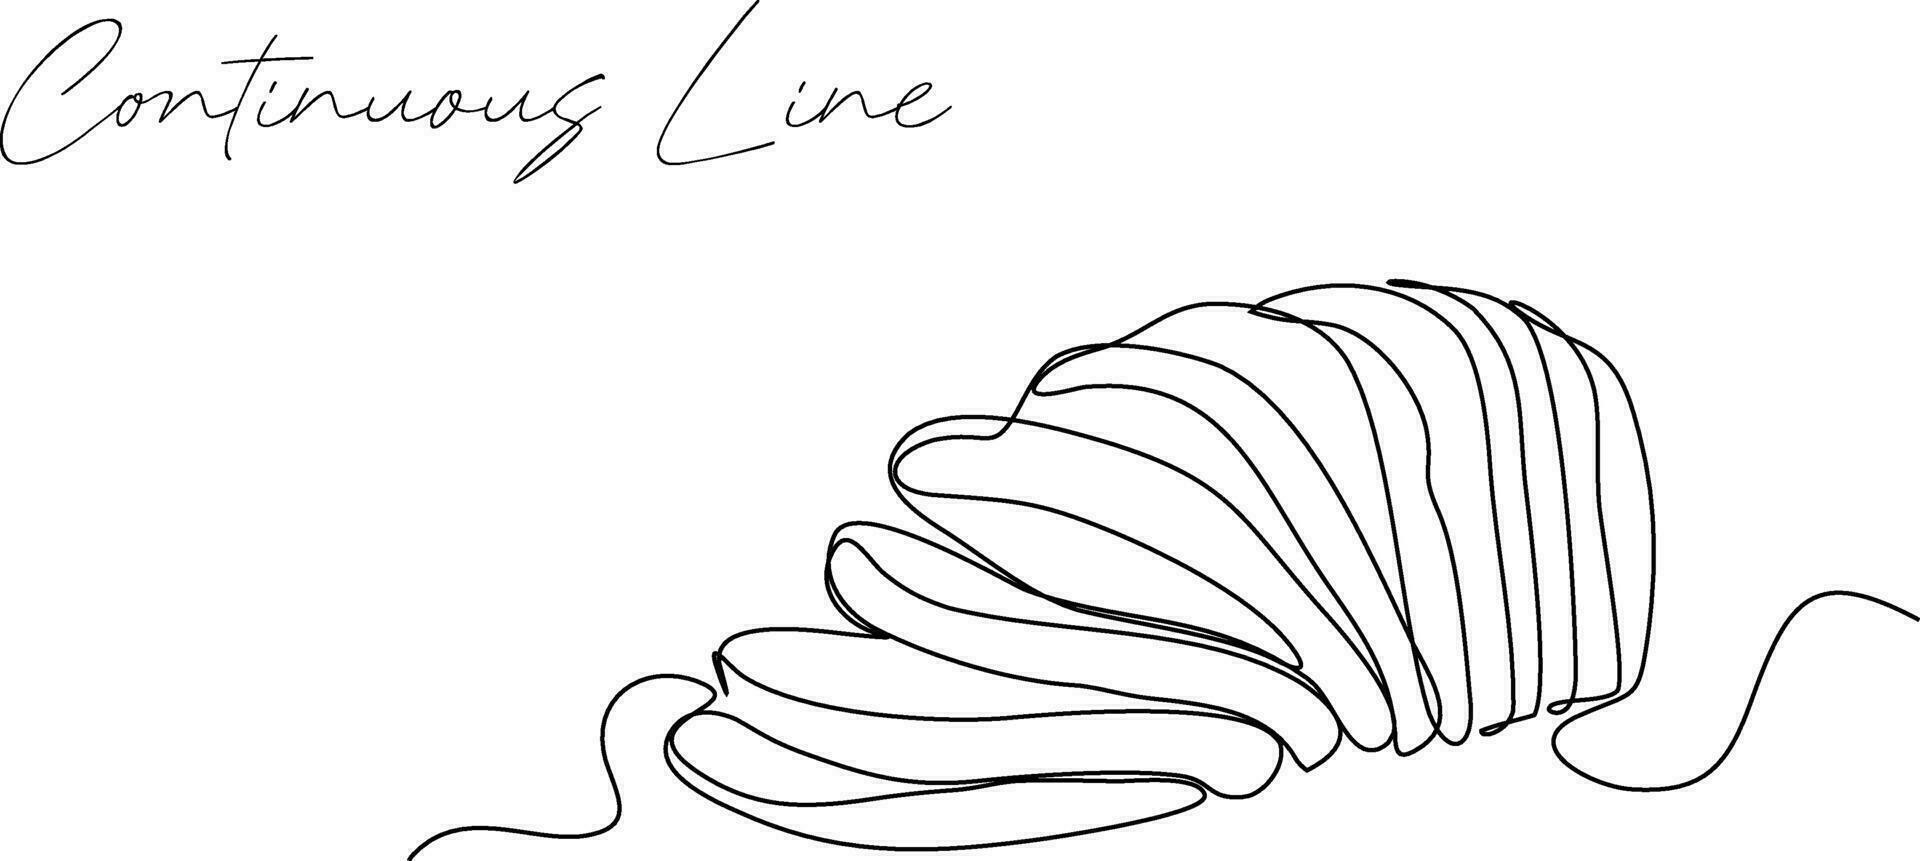 doorlopend lijn tekening van wit brood abstract achtergrond getrokken met een lijn. vector illustratie.